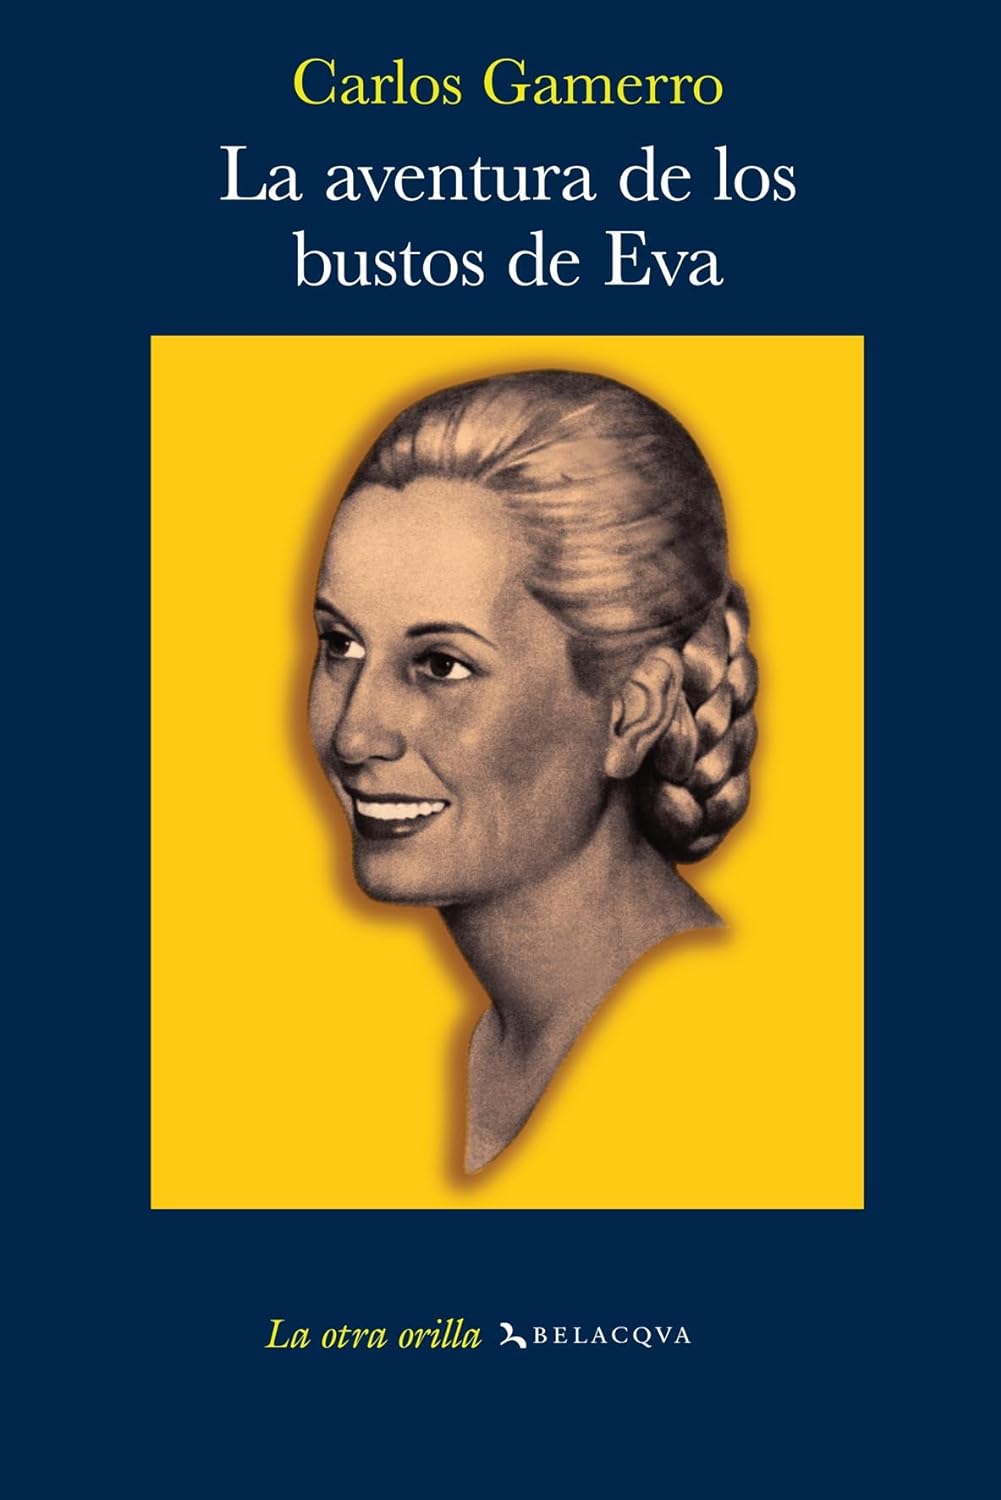 Carlos Gamerro: La aventura de los bustos de Eva (2004, Belacqva)